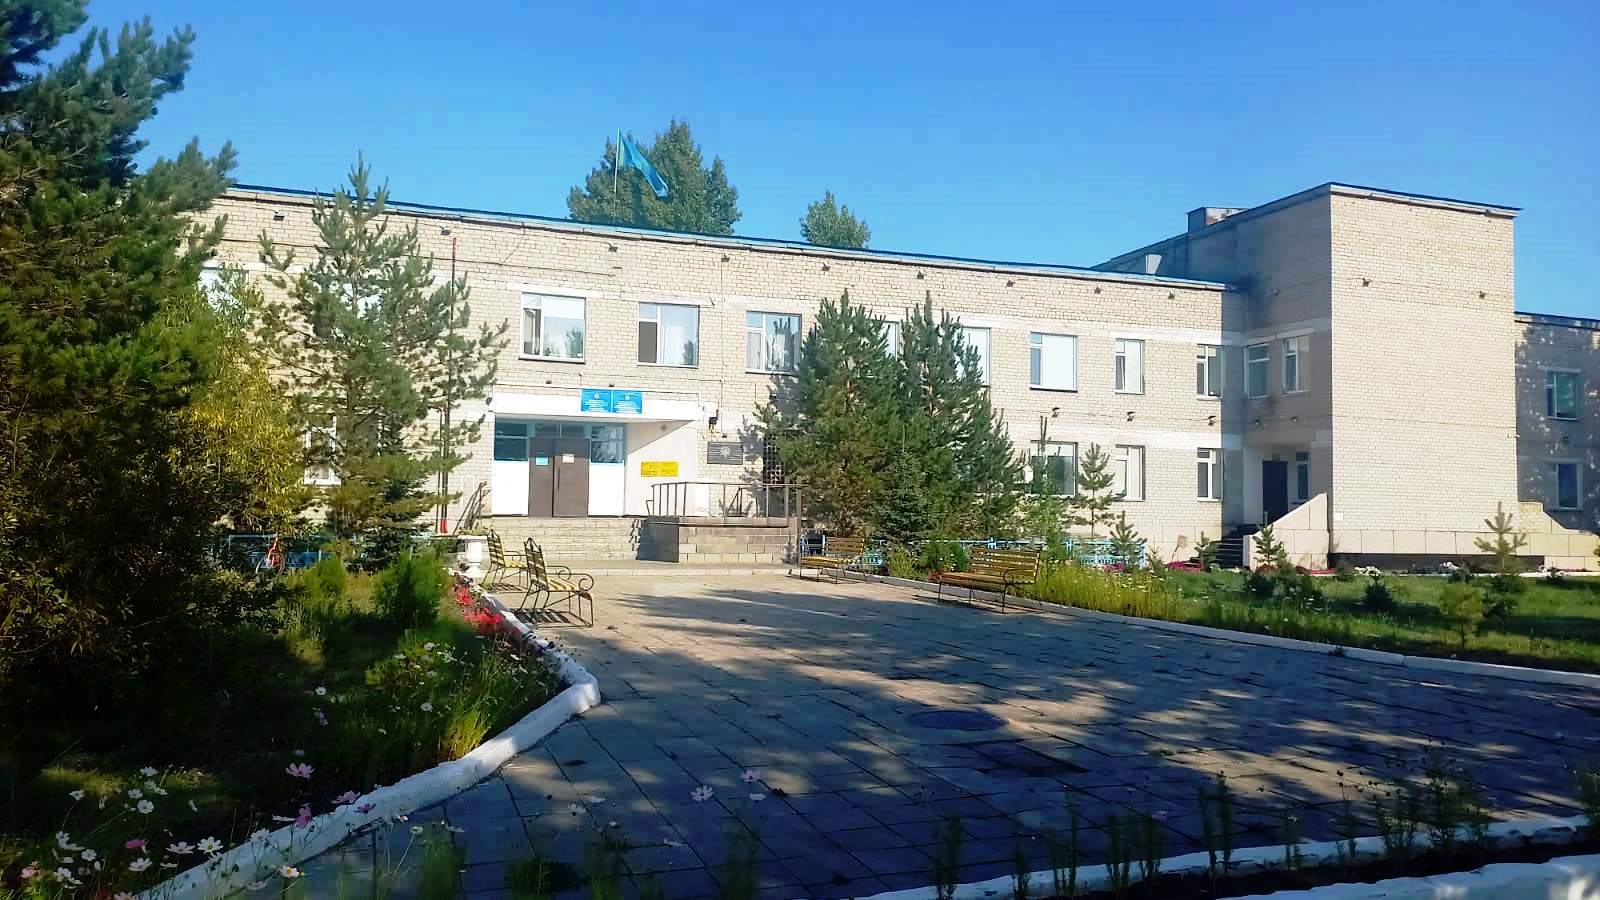 Щербактинская Районная больница 2022 год 